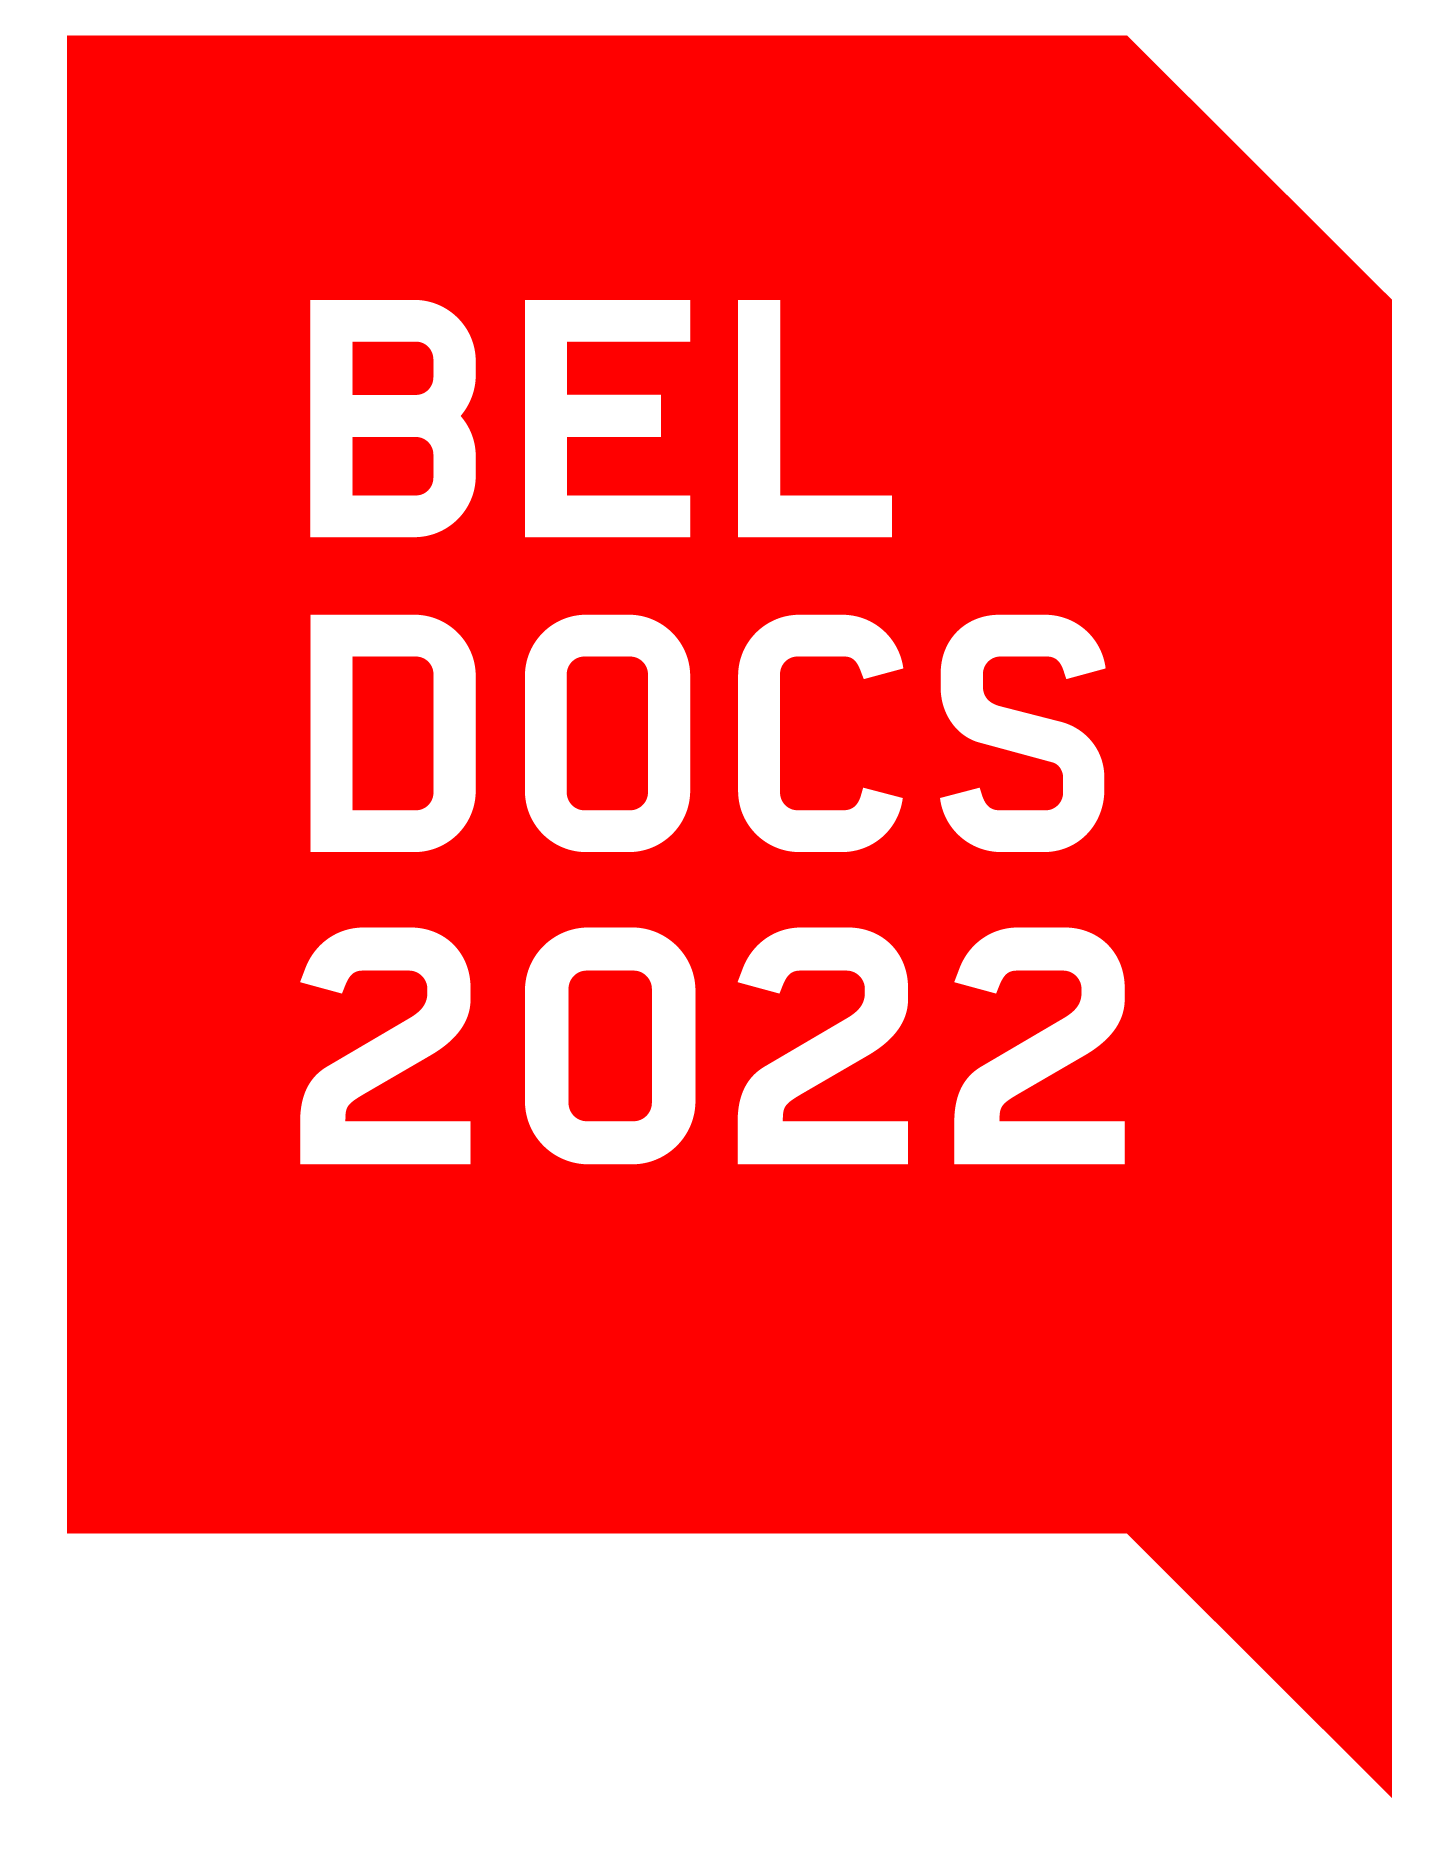 beldocs 2022 logo